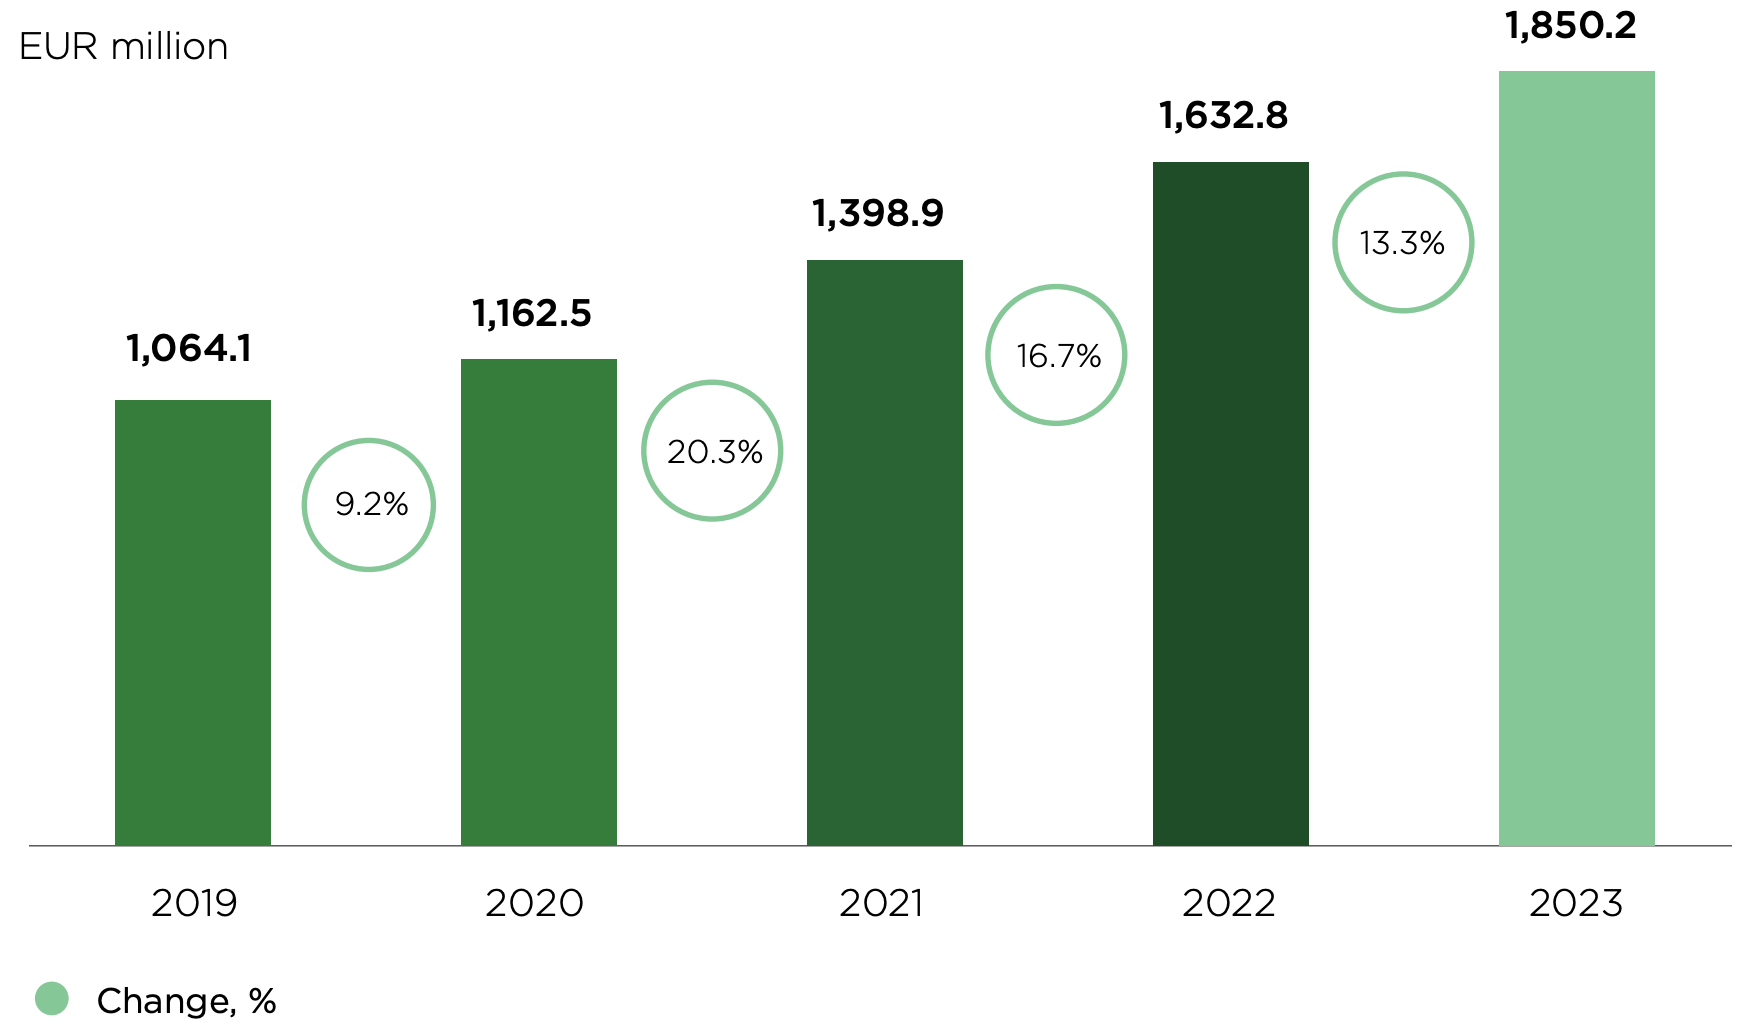 Mehiläinen's revenue between 2019-2021. Revenue in 2019: 1,064.1 EUR million, 2020: 1,162.5 EUR million, 2021: 1,398.5 EUR million, 2022: 1,623.8 million and 2023: 